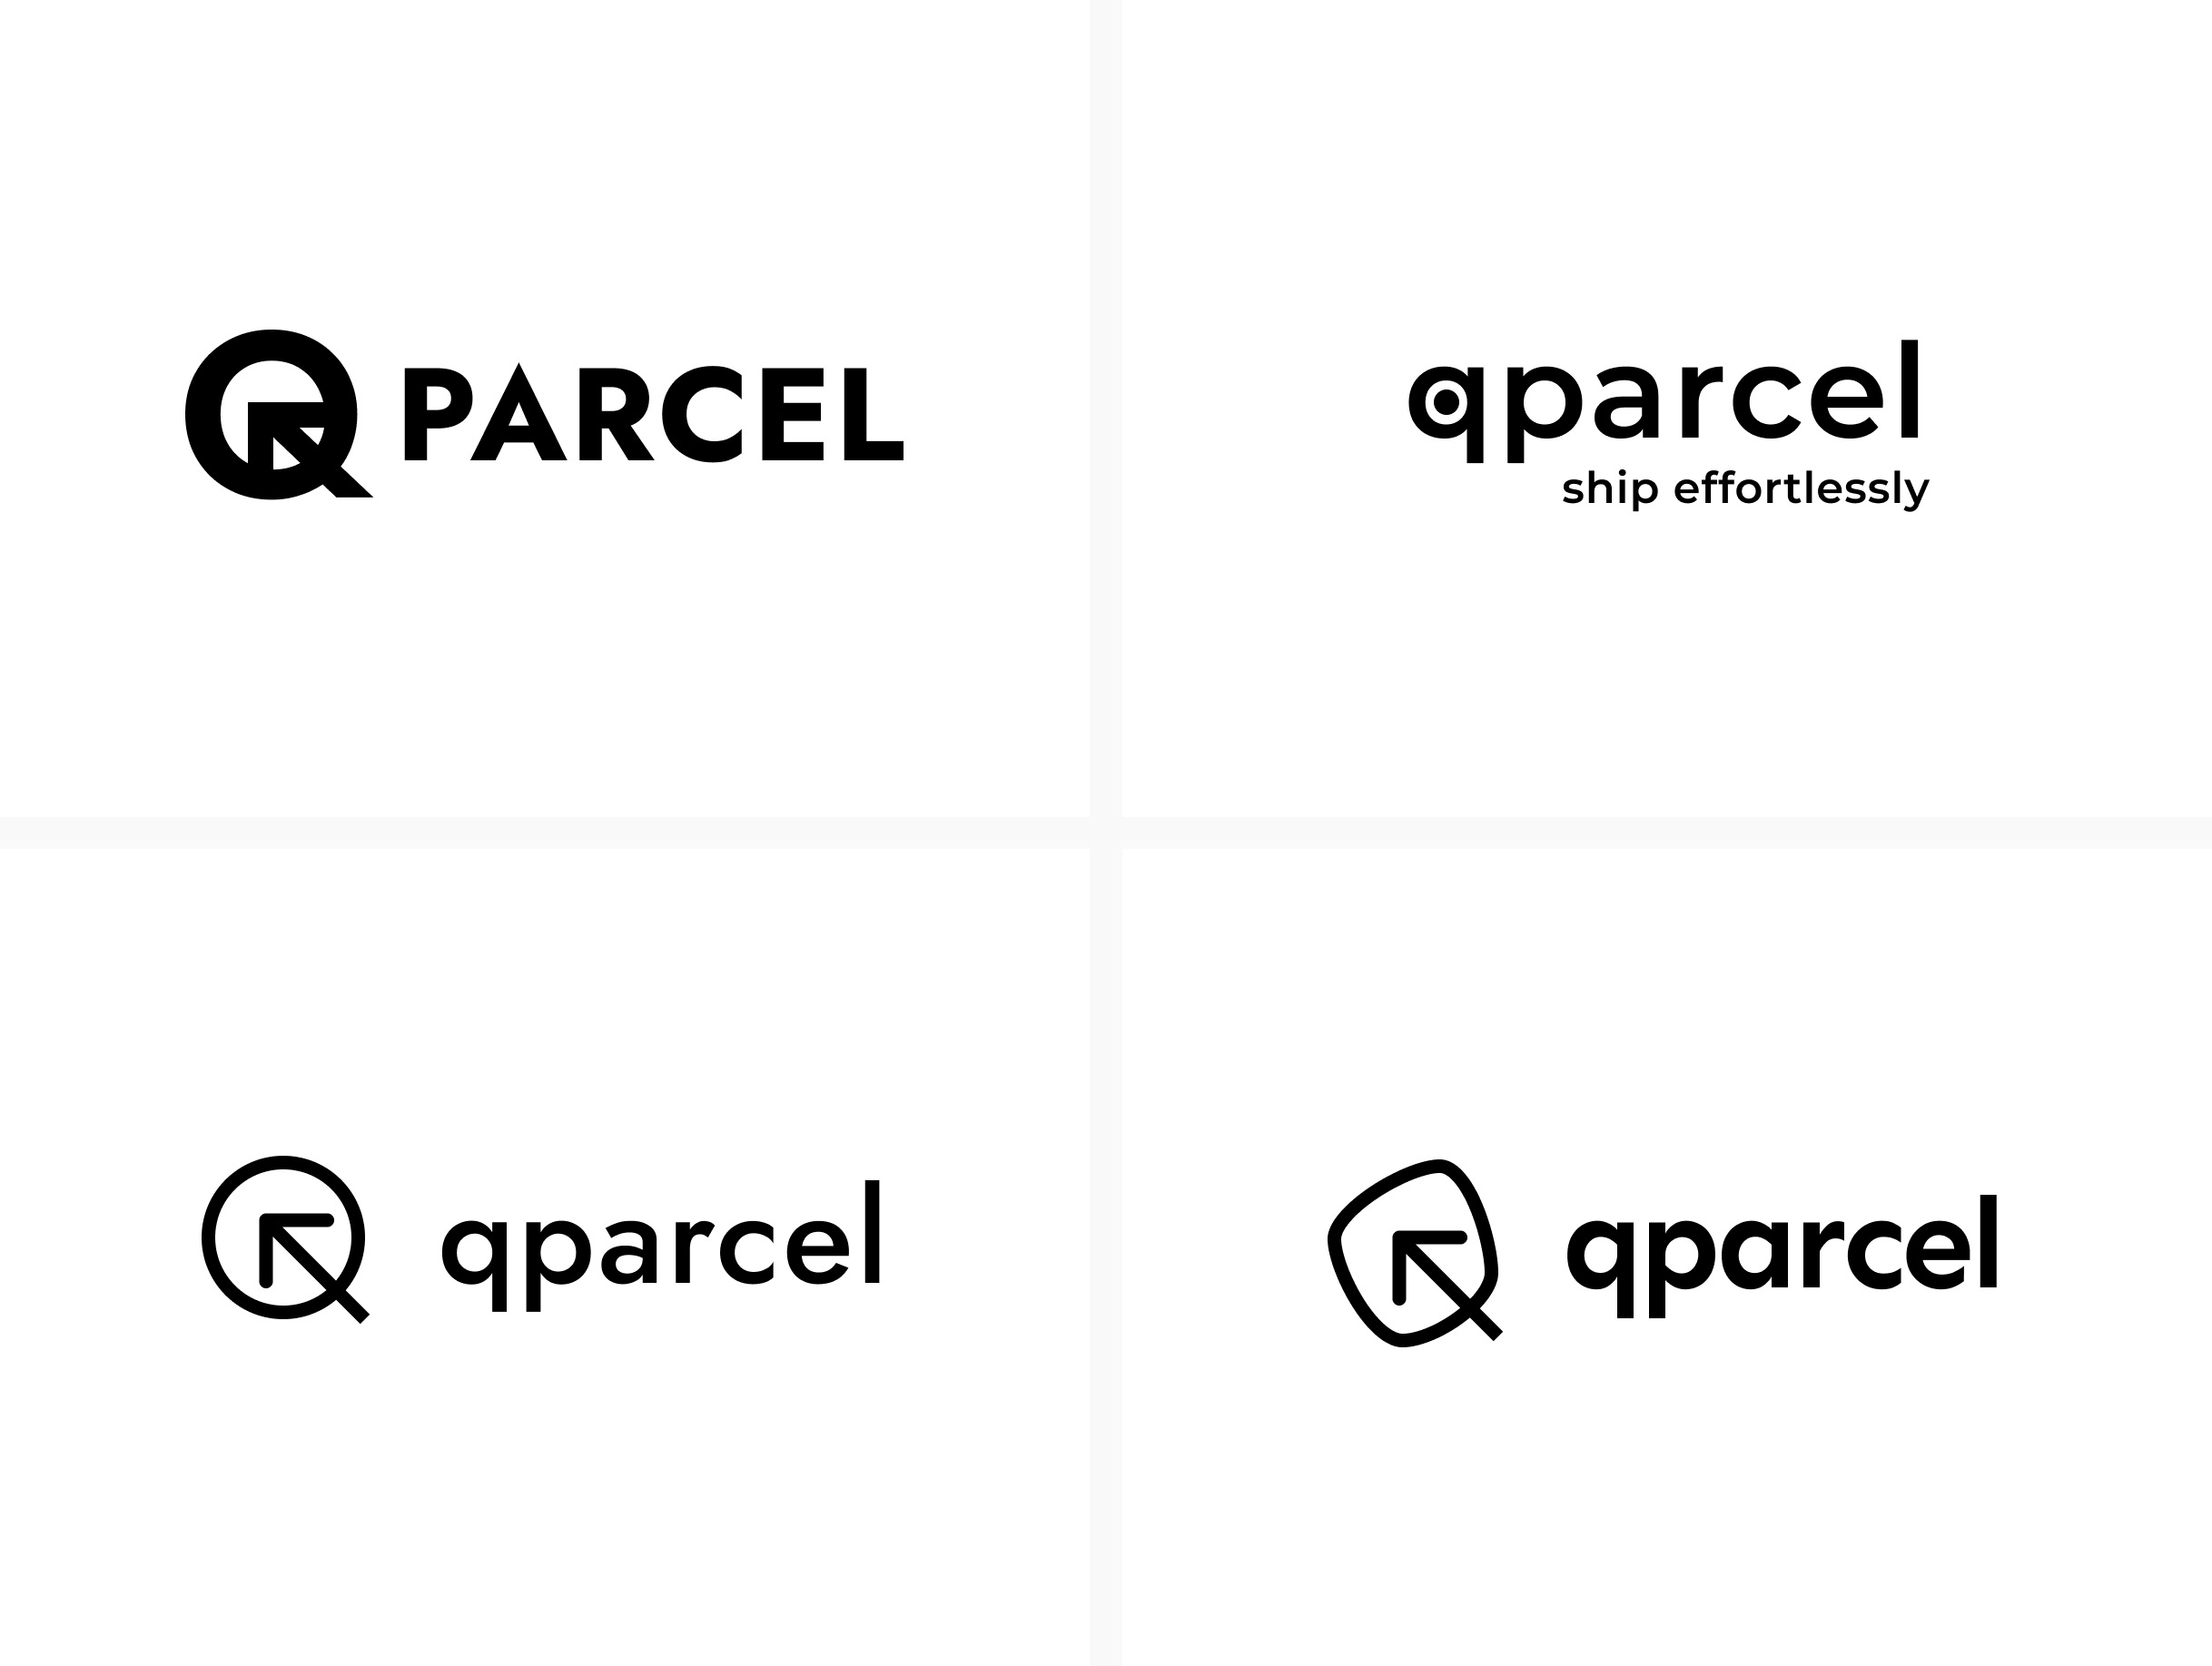 design for QParcel